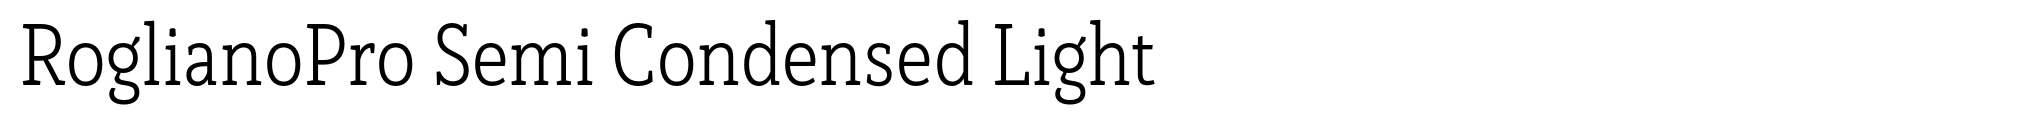 RoglianoPro Semi Condensed Light image